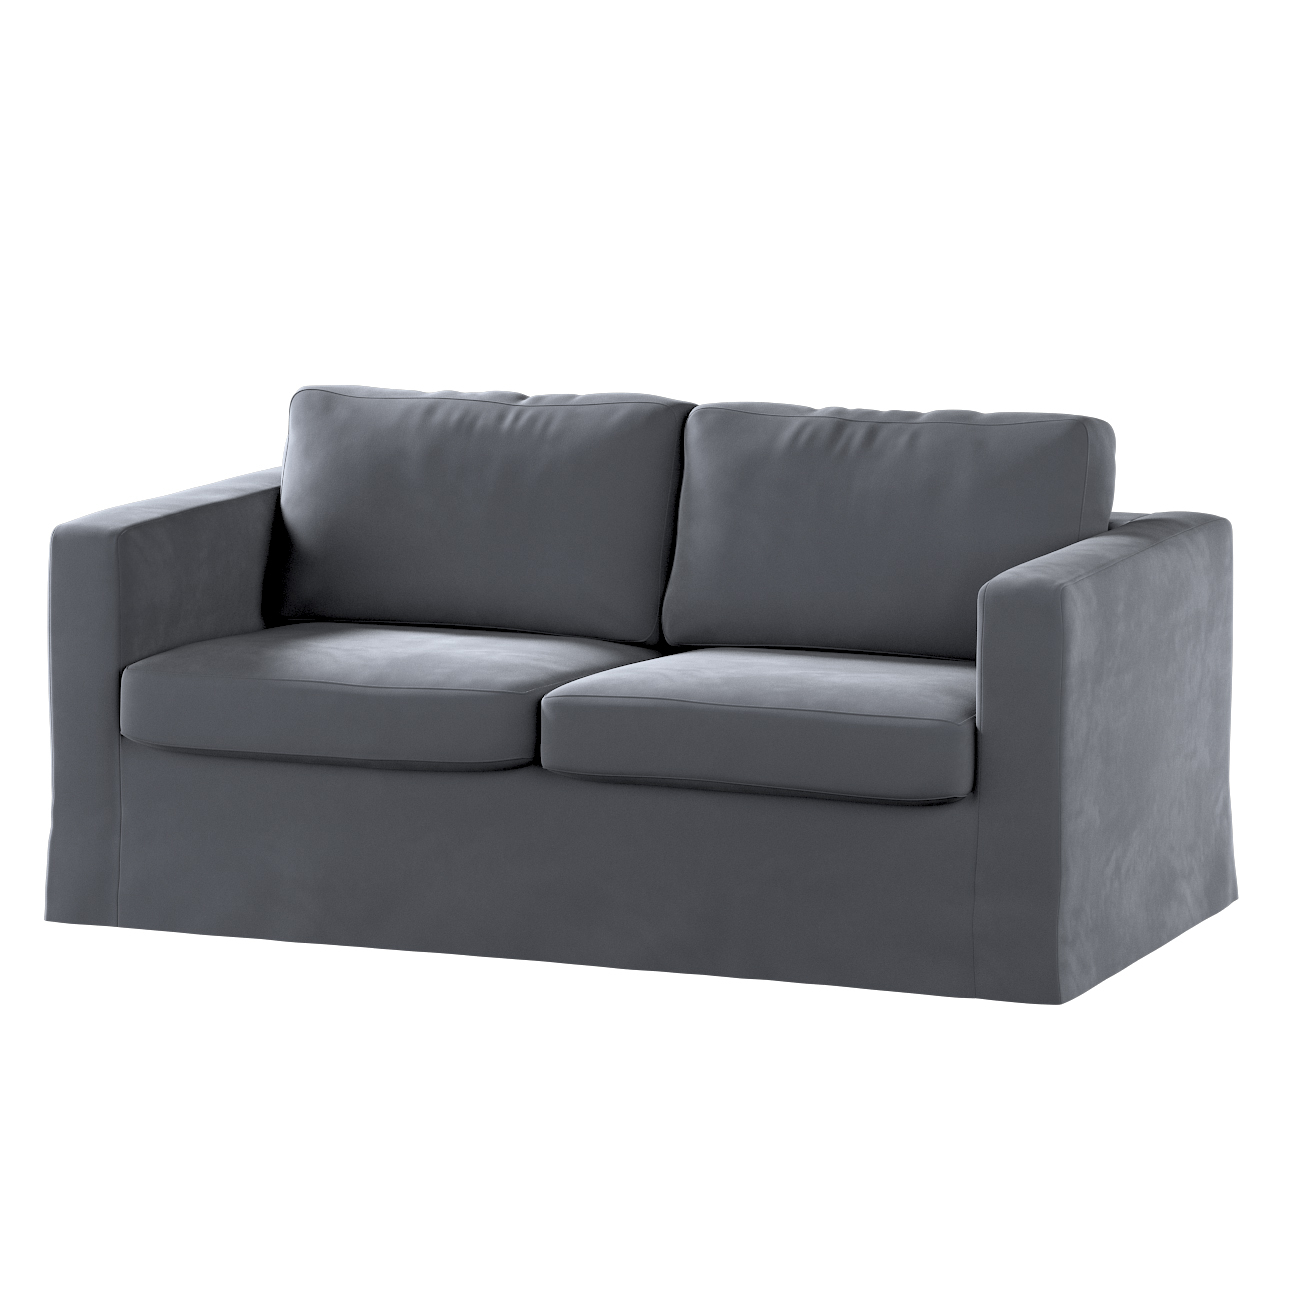 Bezug für Karlstad 2-Sitzer Sofa nicht ausklappbar, lang, anthrazit, Sofahu günstig online kaufen